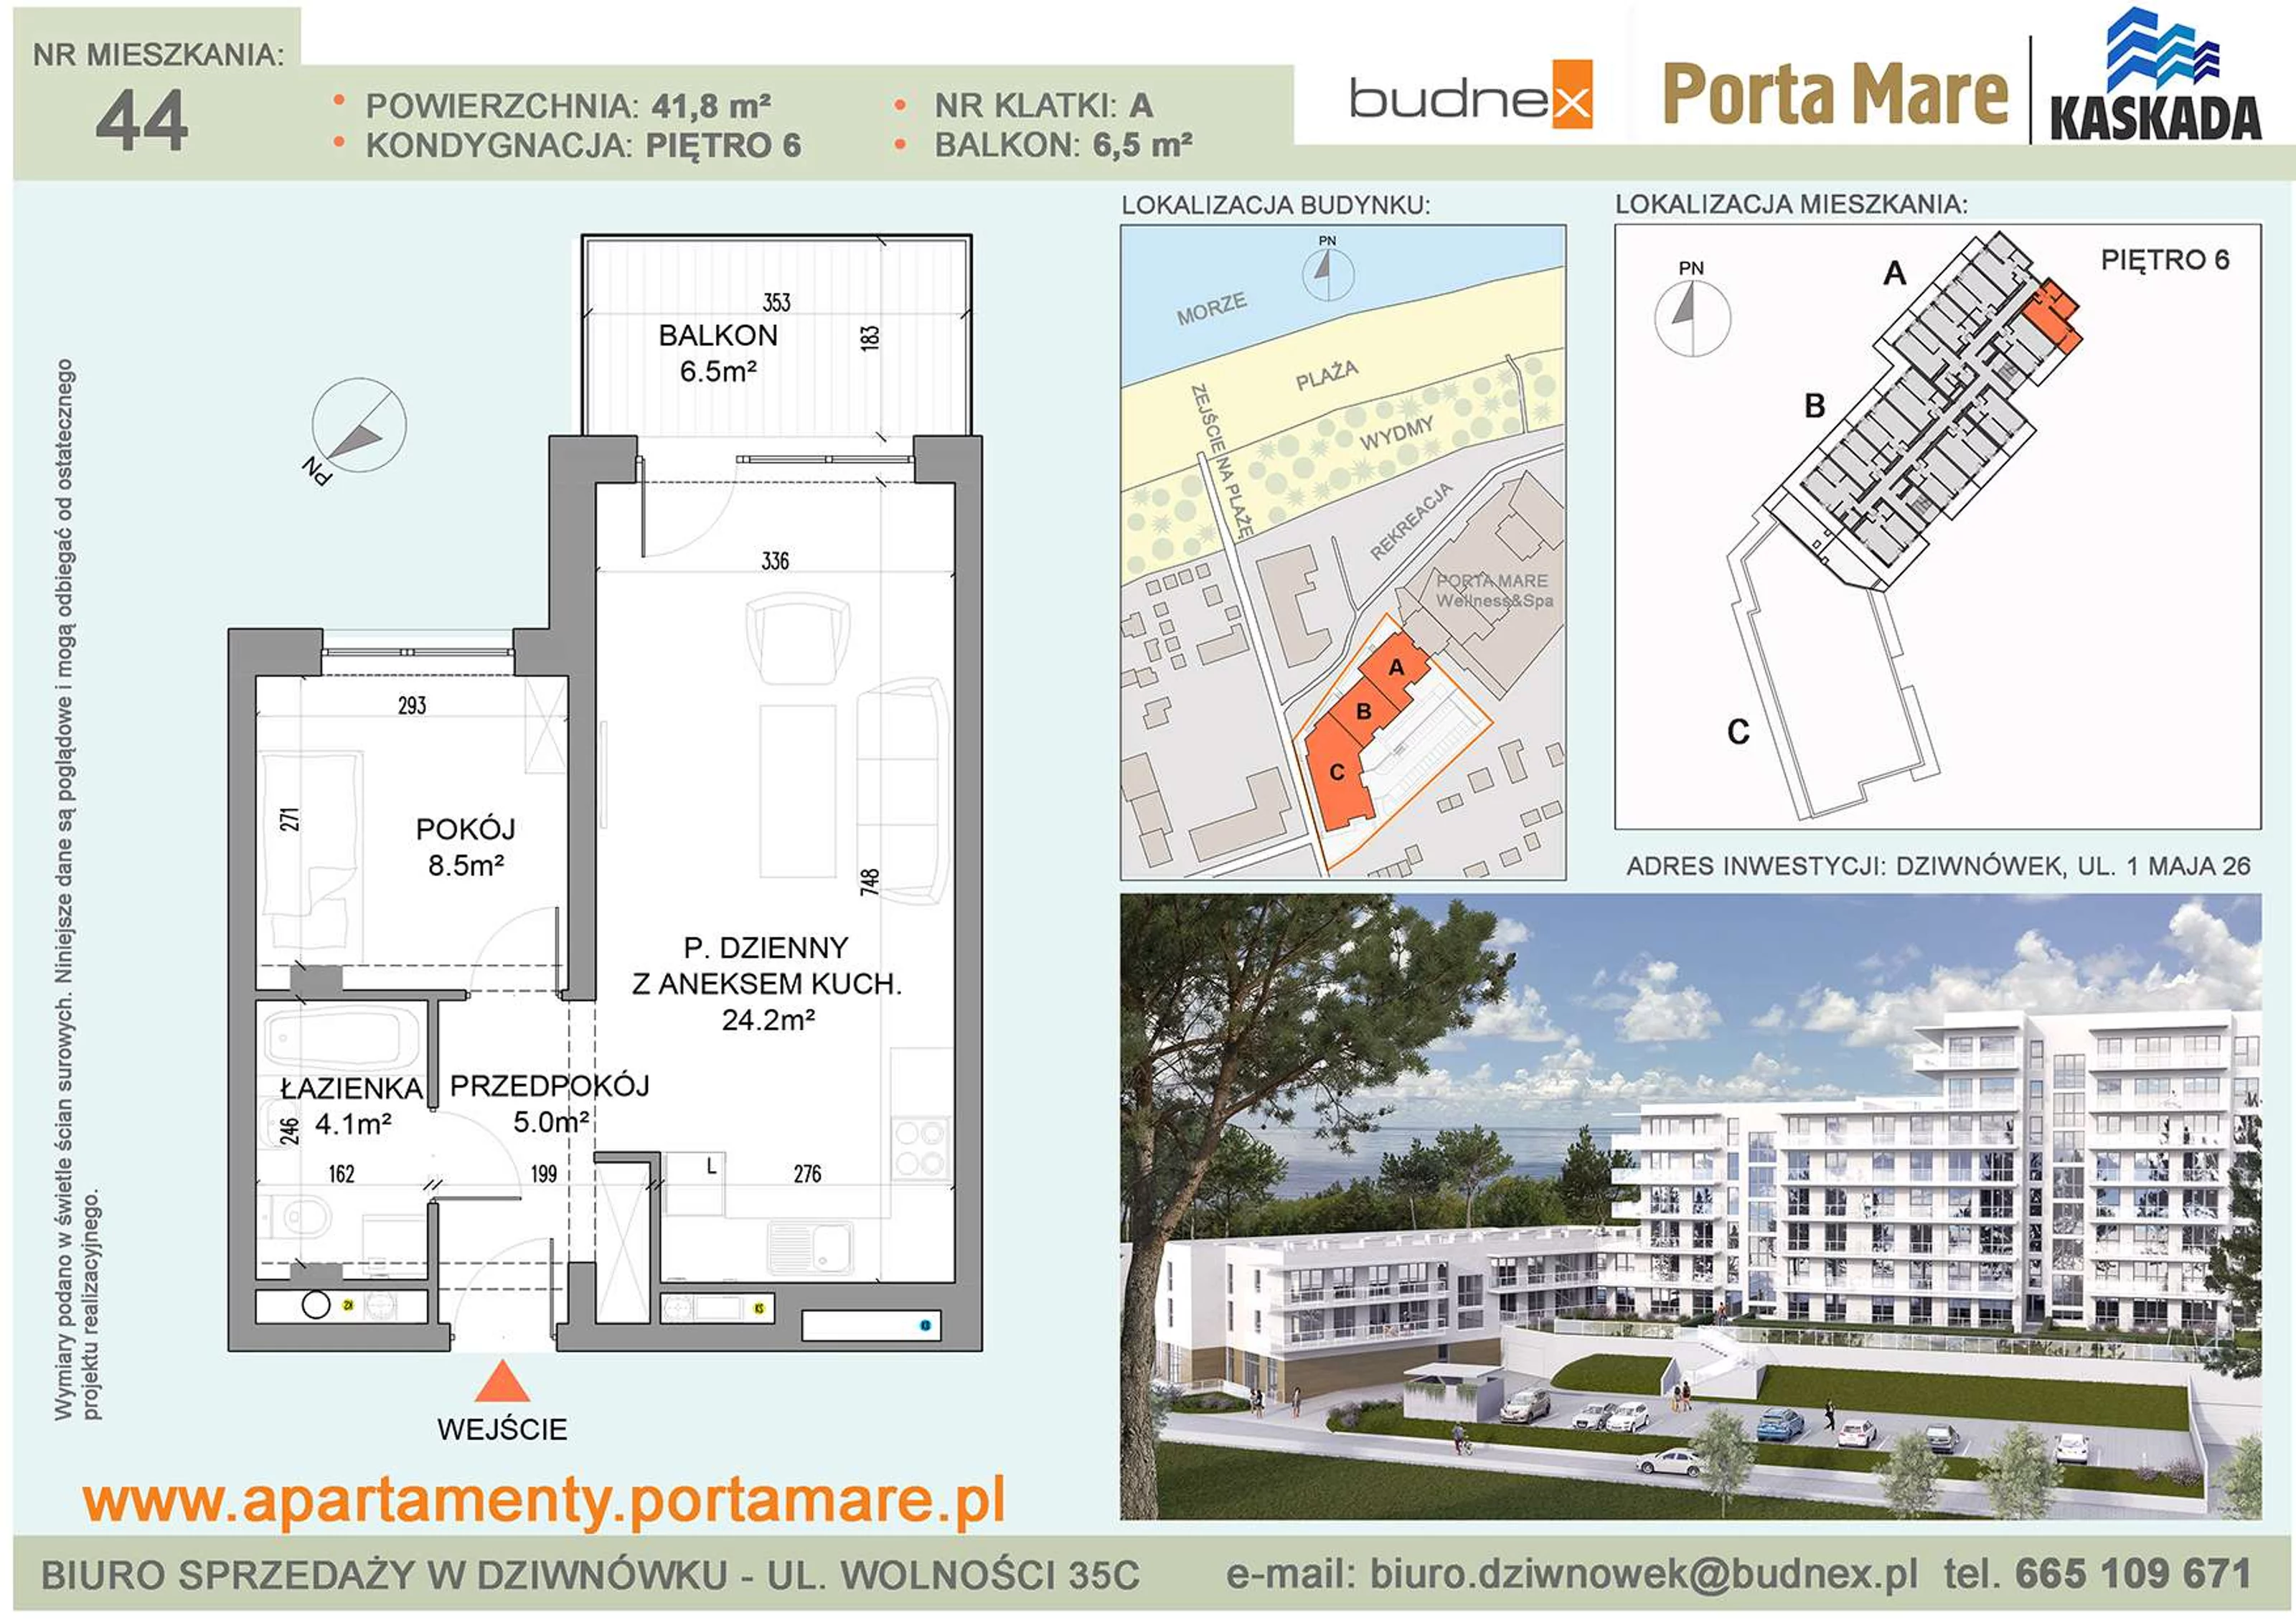 Apartament 41,80 m², piętro 6, oferta nr A/M44, Porta Mare Kaskada, Dziwnówek, ul. 1 Maja 26